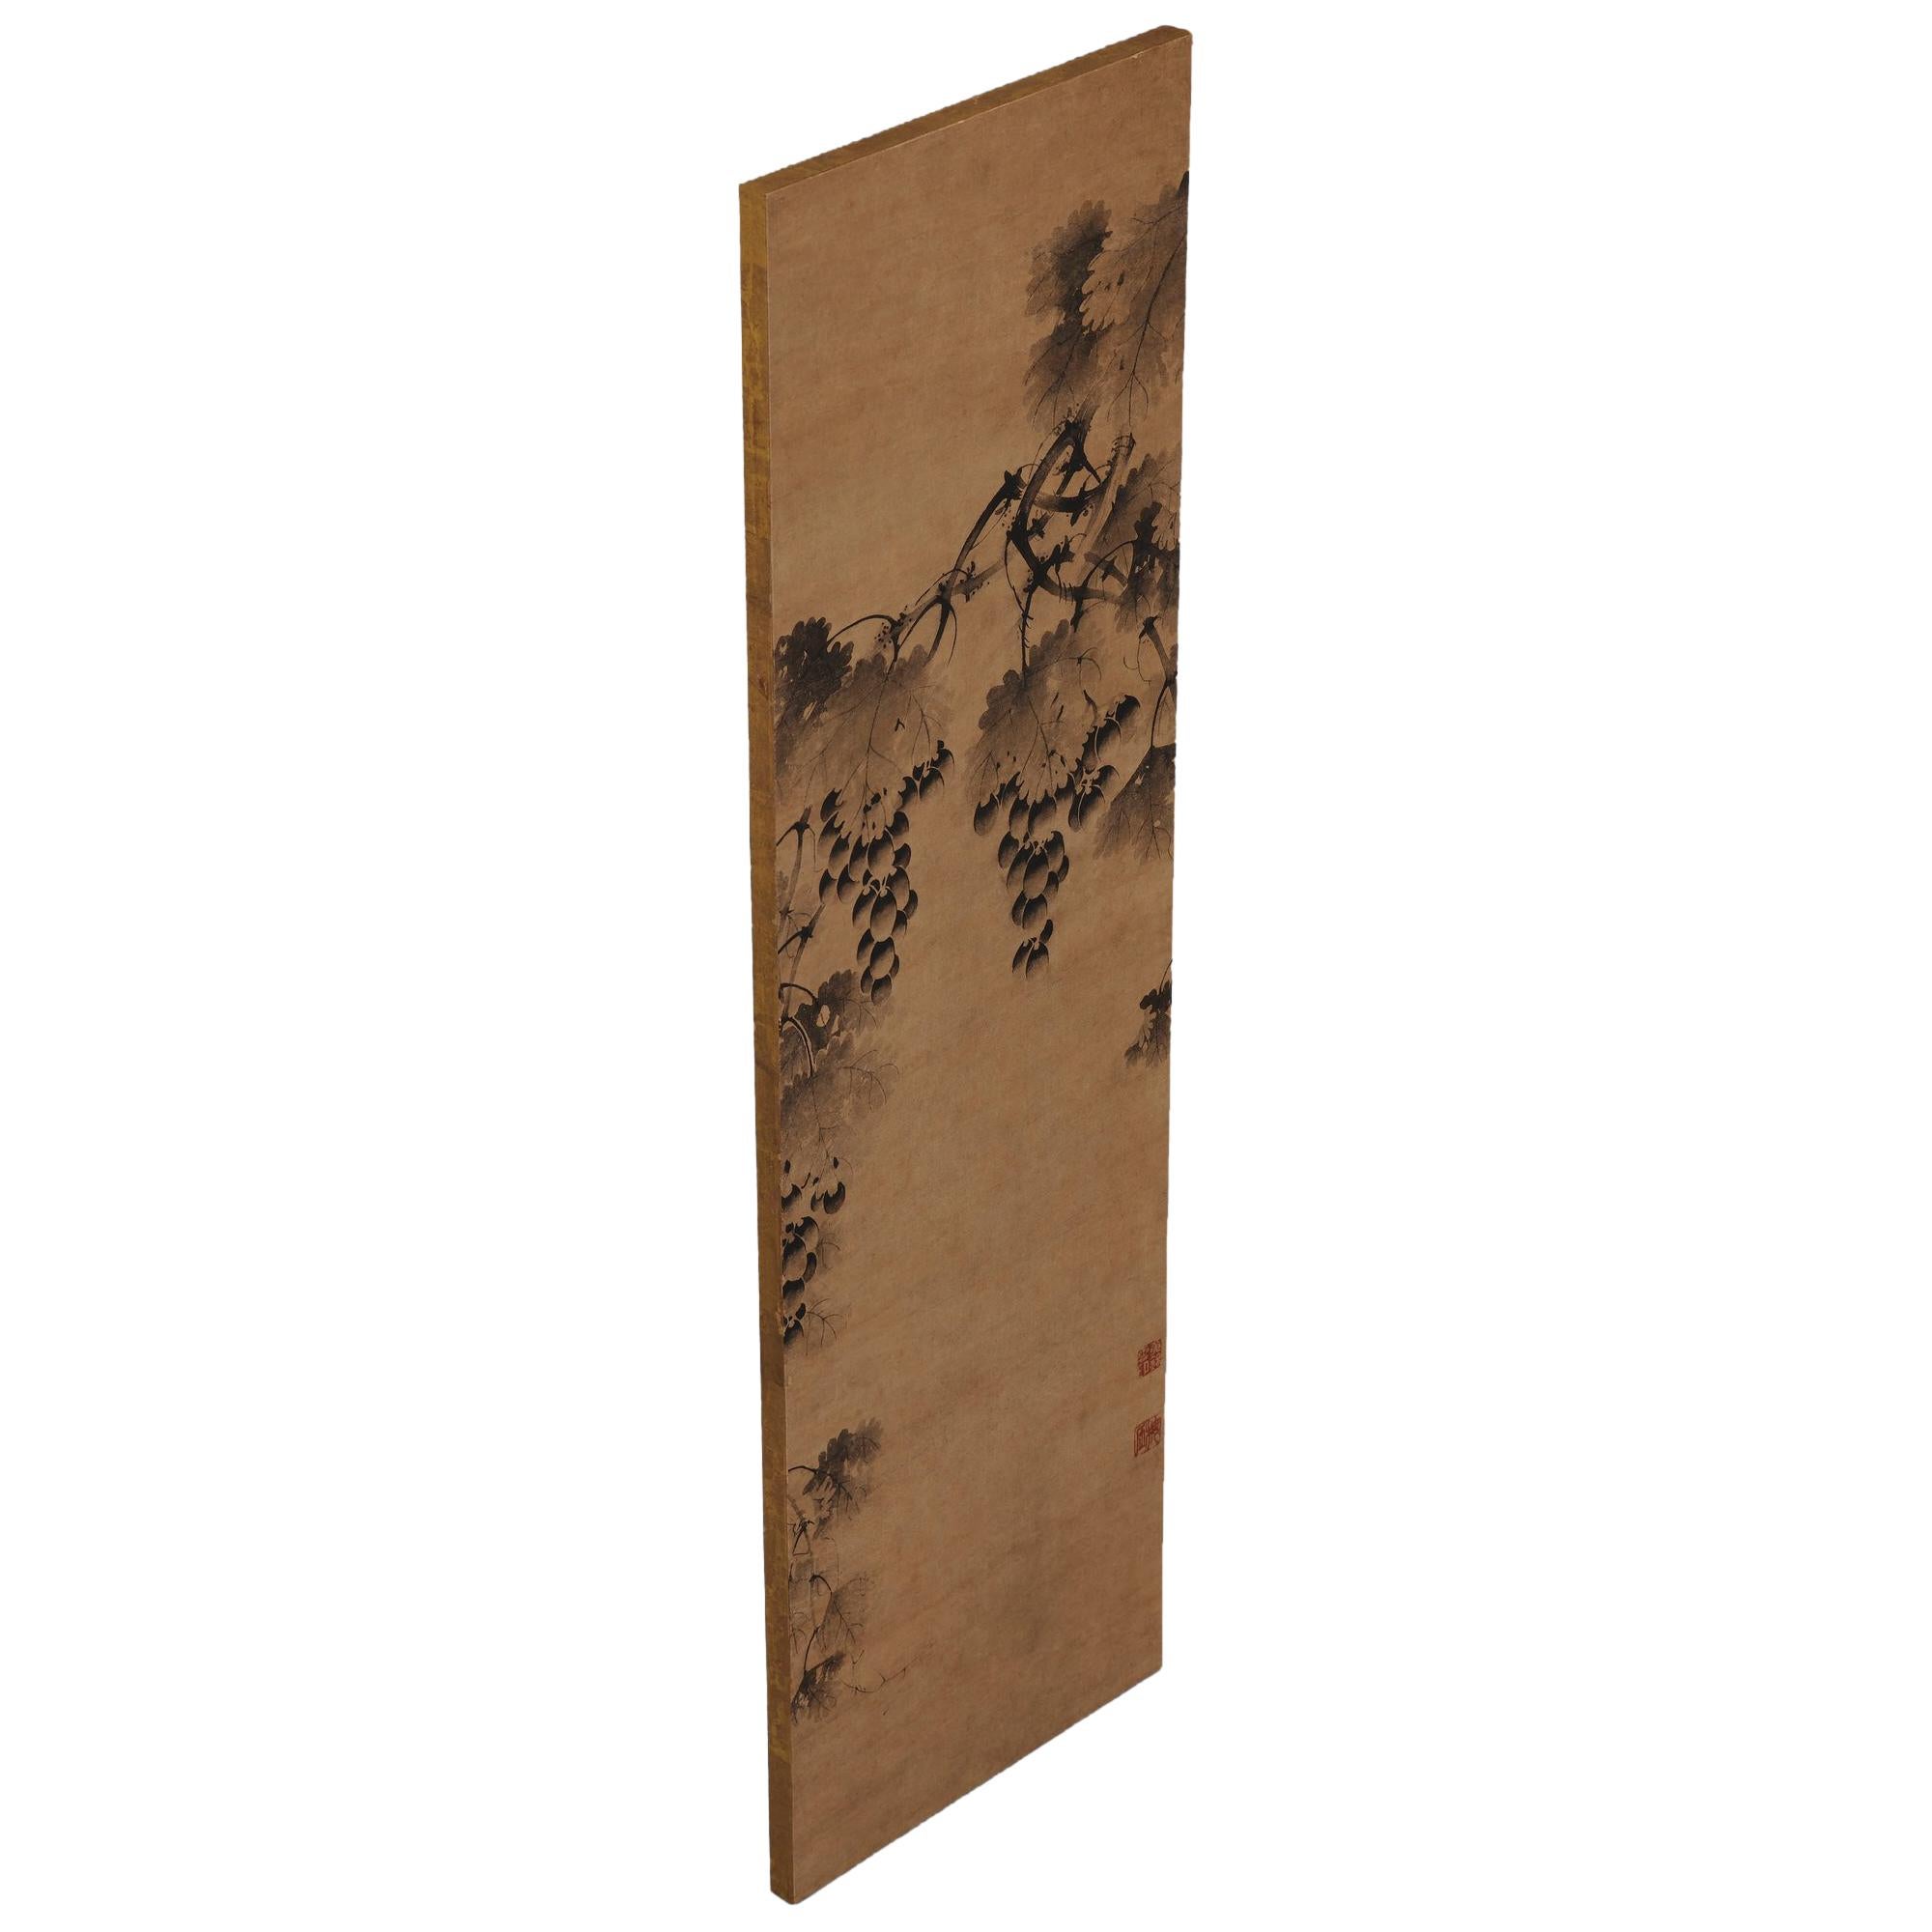 Grapevine

Anonyme. Corée, XVIIe siècle.

Panneau mural, encre sur papier.

Joint supérieur :

Kou Kinun en

Joint inférieur :

Kaigen

Dimensions :

Mesures : 98,5 cm x 29,5 cm (39